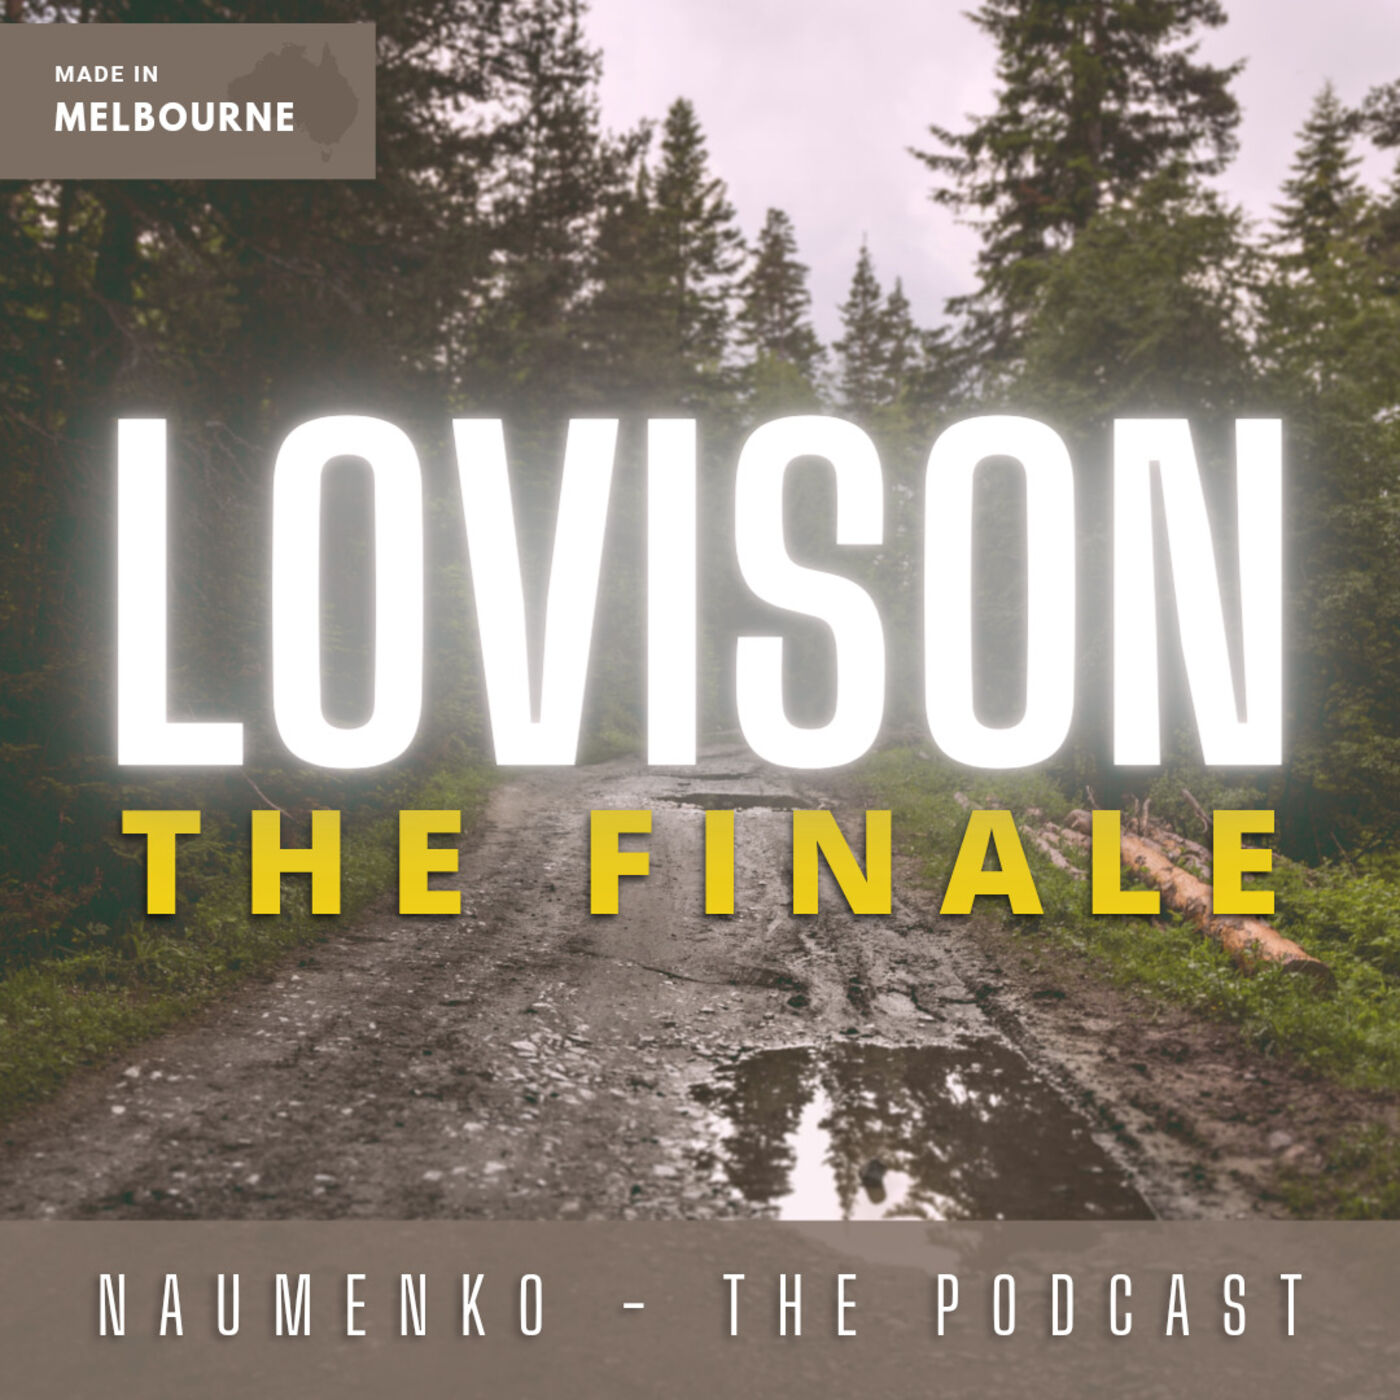 Lovison - The Finale